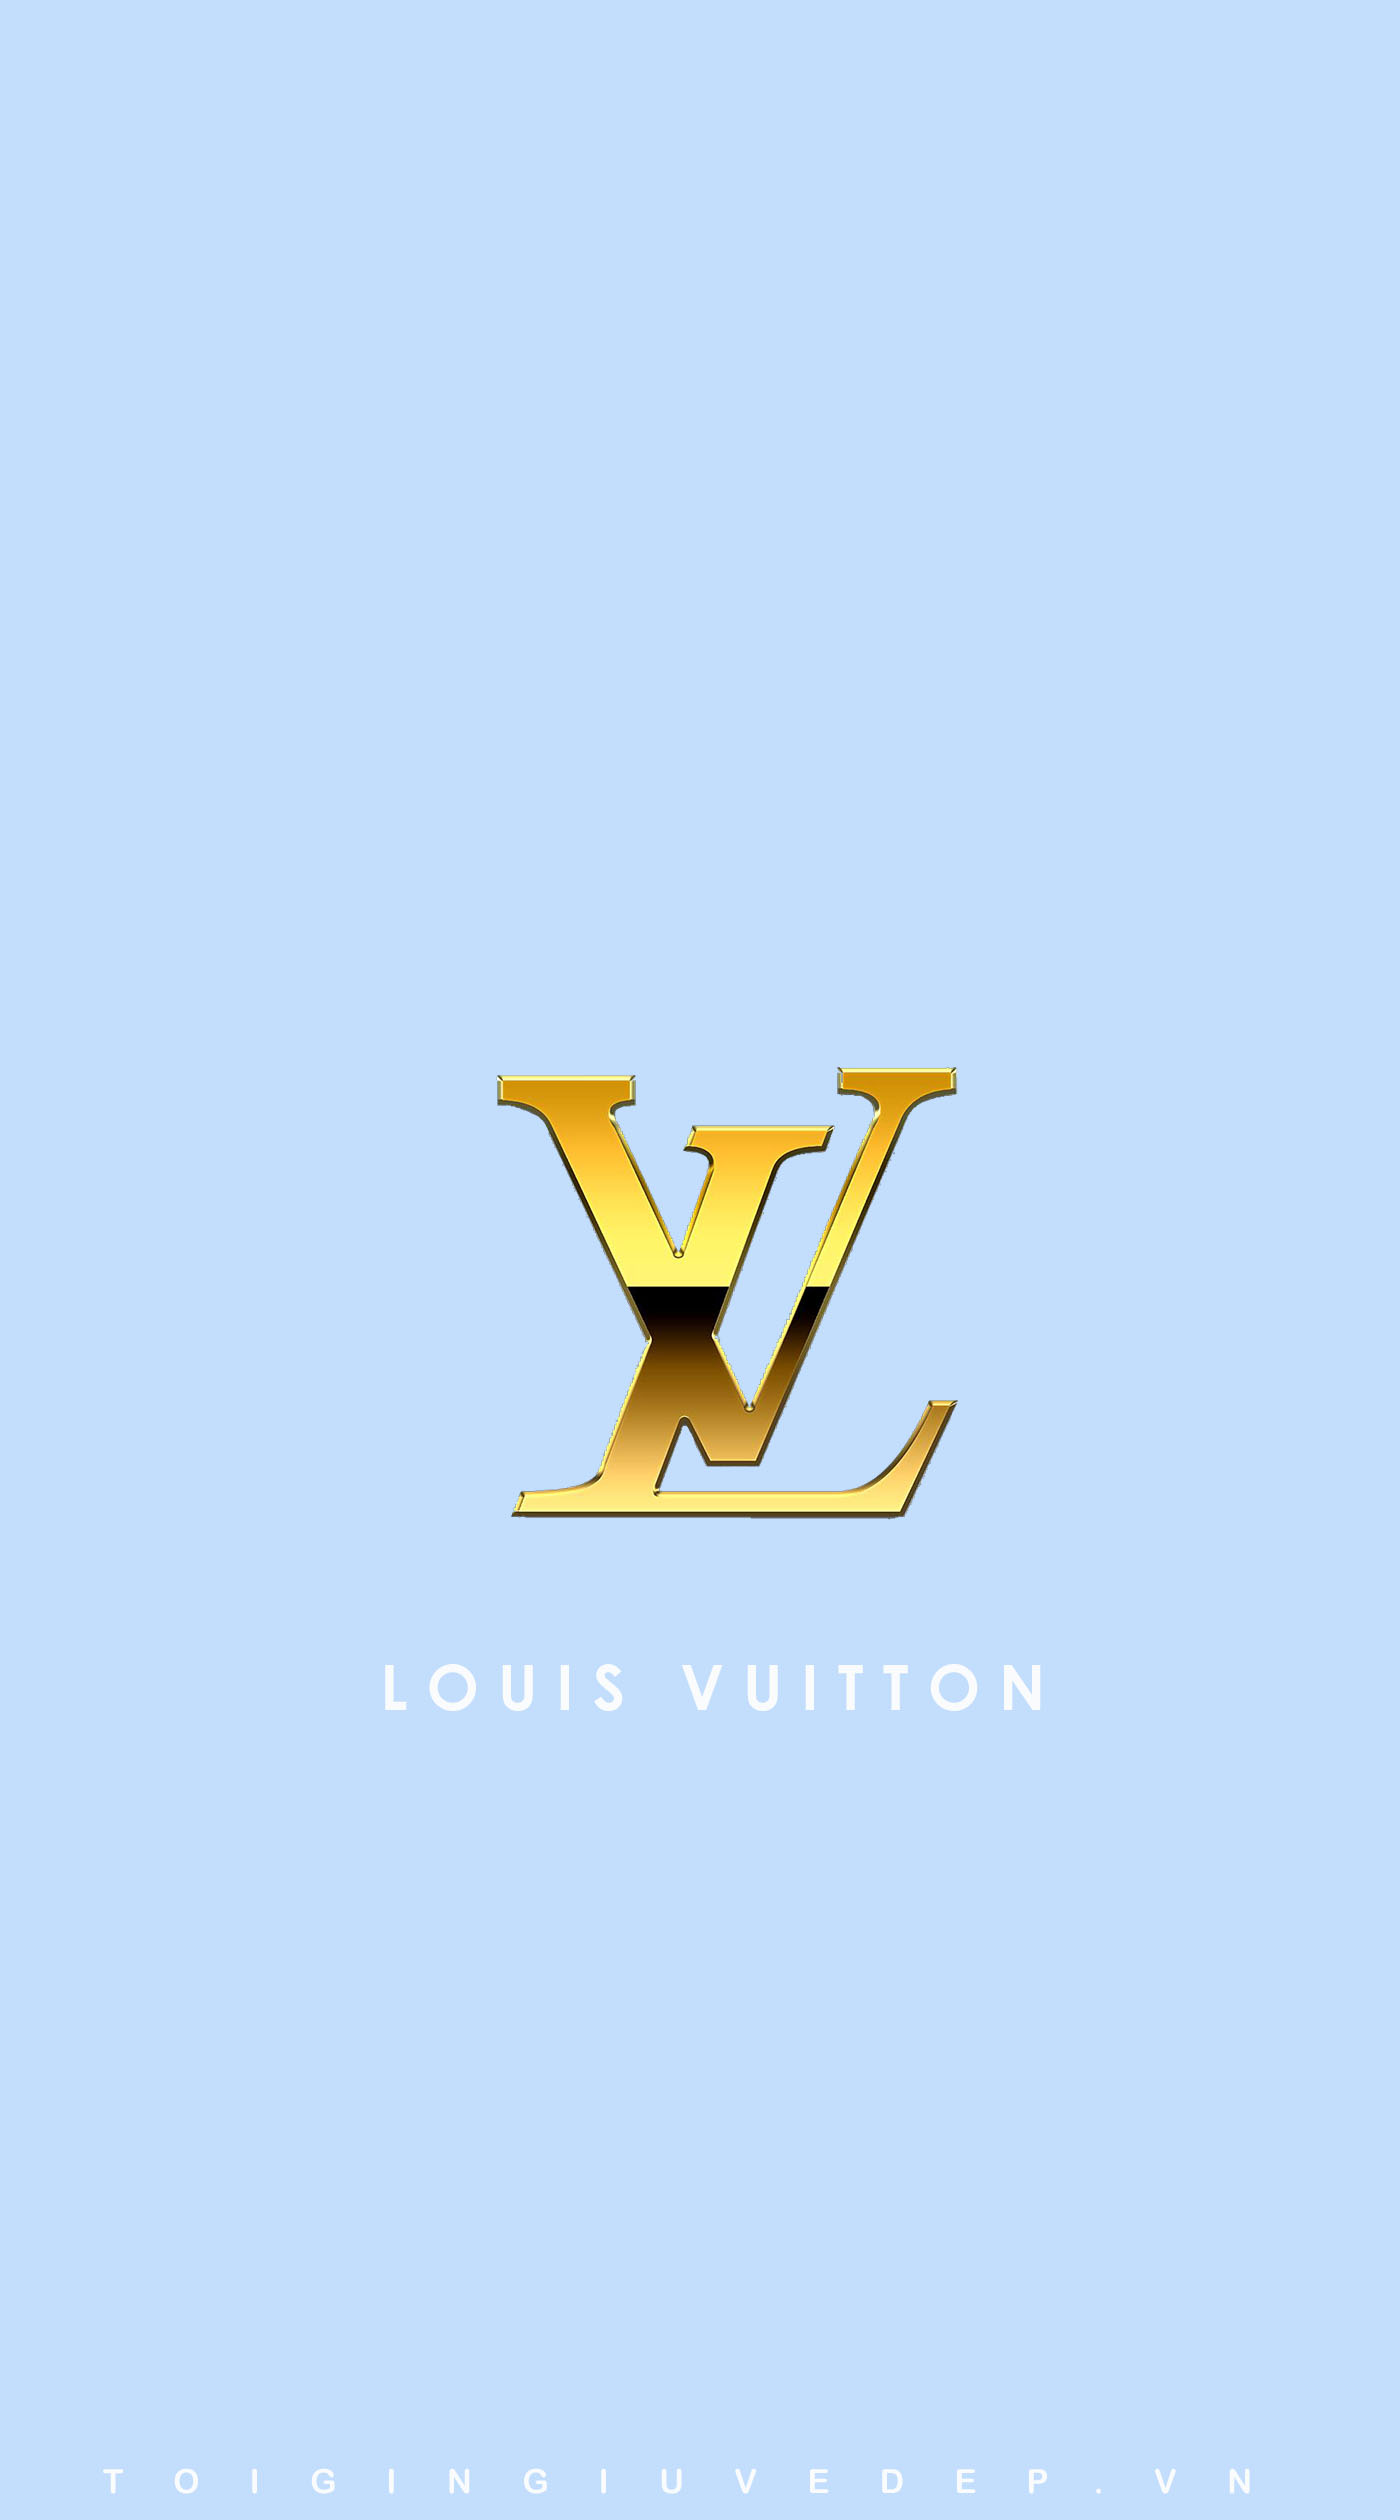 100 Free Louis Vuitton HD Wallpapers & Backgrounds - MrWallpaper.com